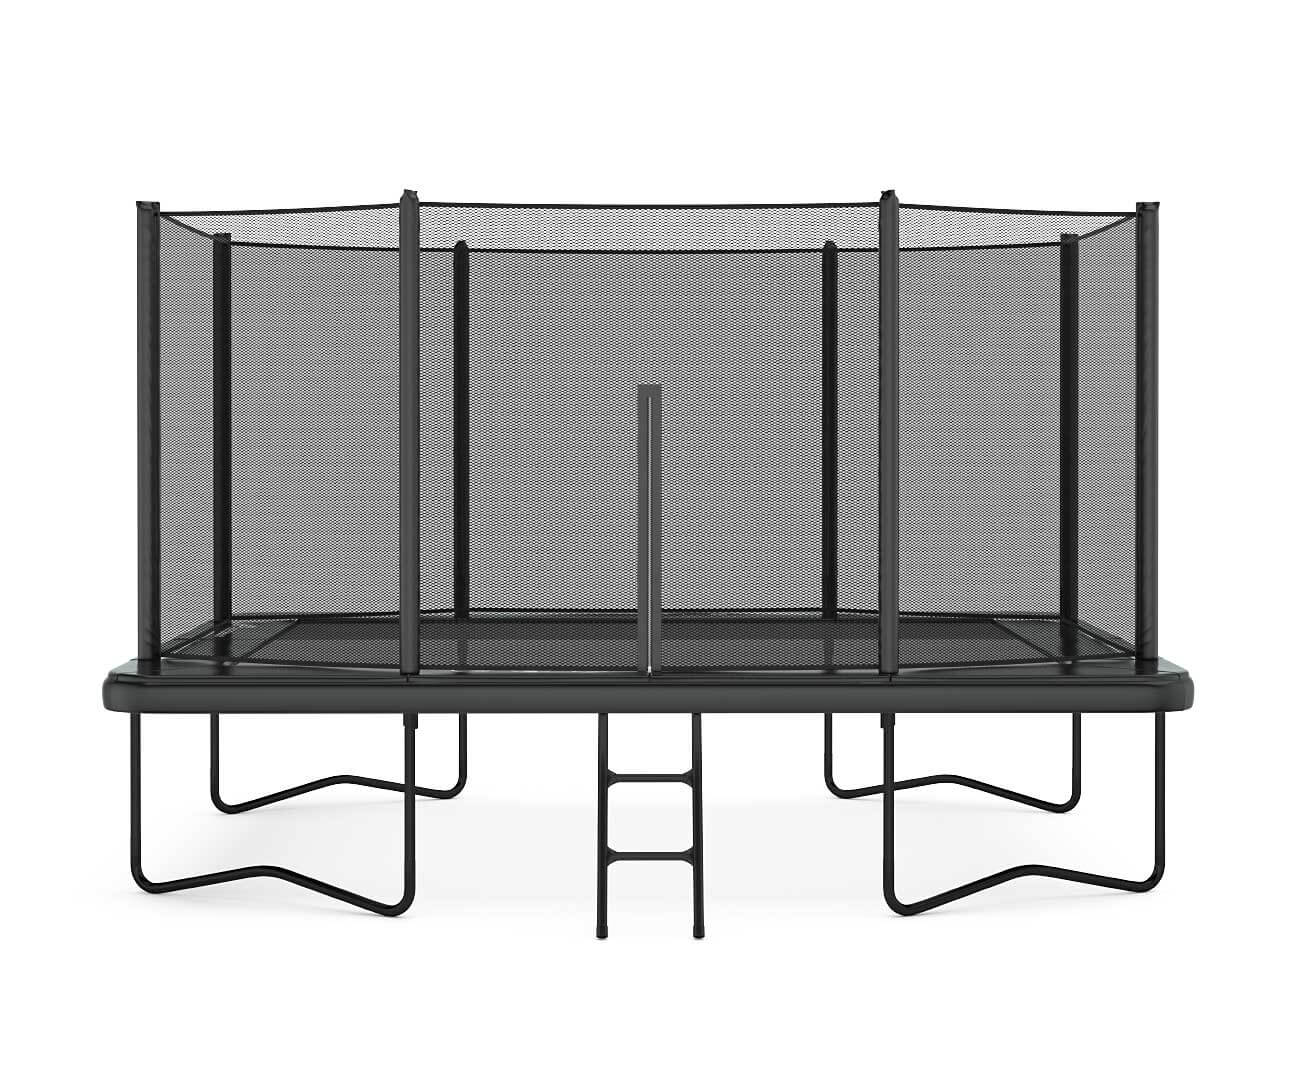 Sport_Trampolines-PRIMUS_CHALLENGER-10x6, 11x8 ft - Rectangular trampoline